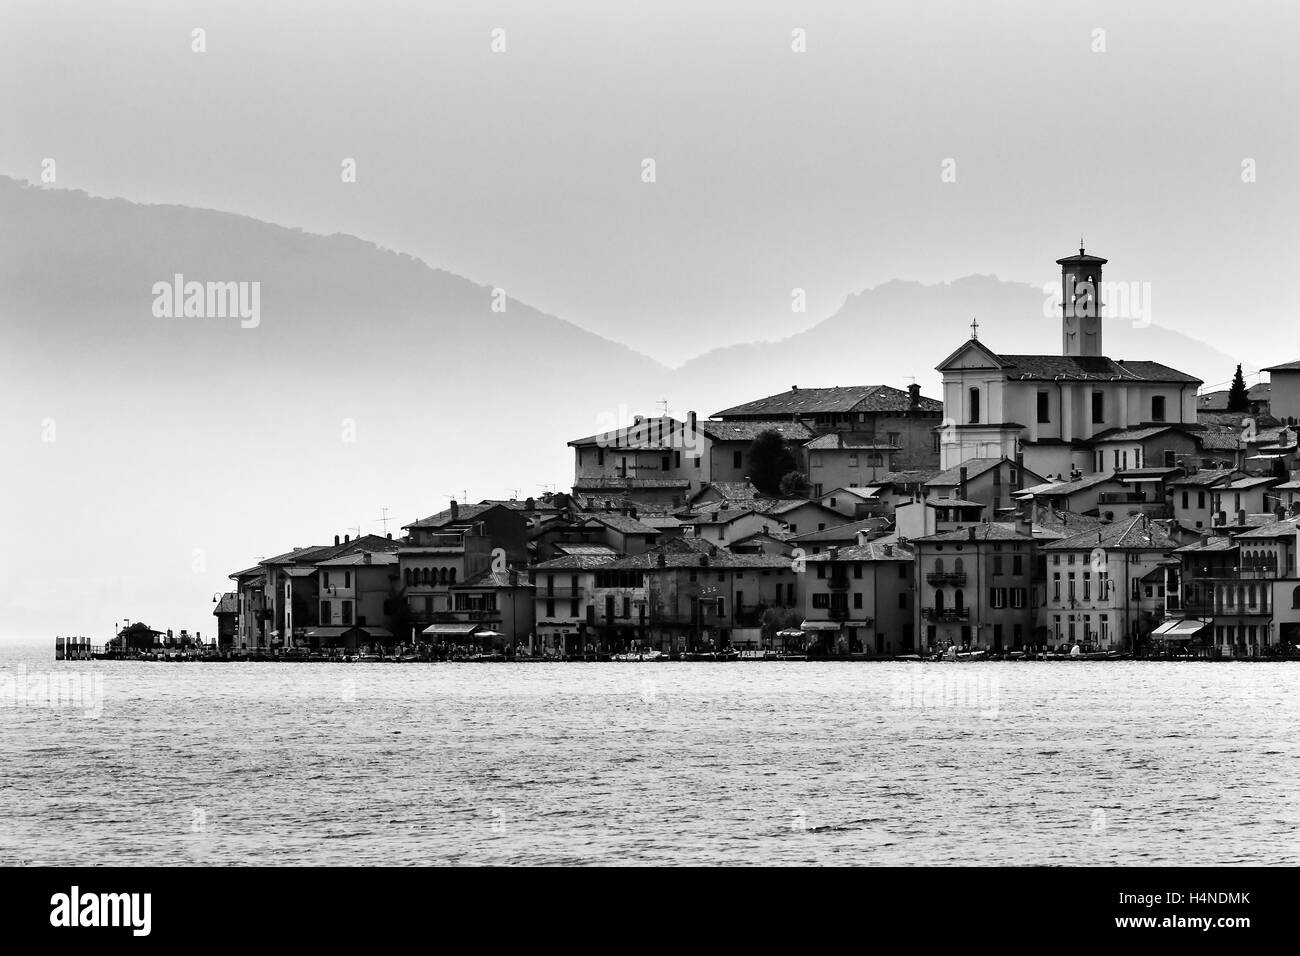 Distante piccolo villaggio di pescatori sul lago di como waterfront in Italia rivolta verso l acqua calma con montagne delle Alpi in background. Foto Stock